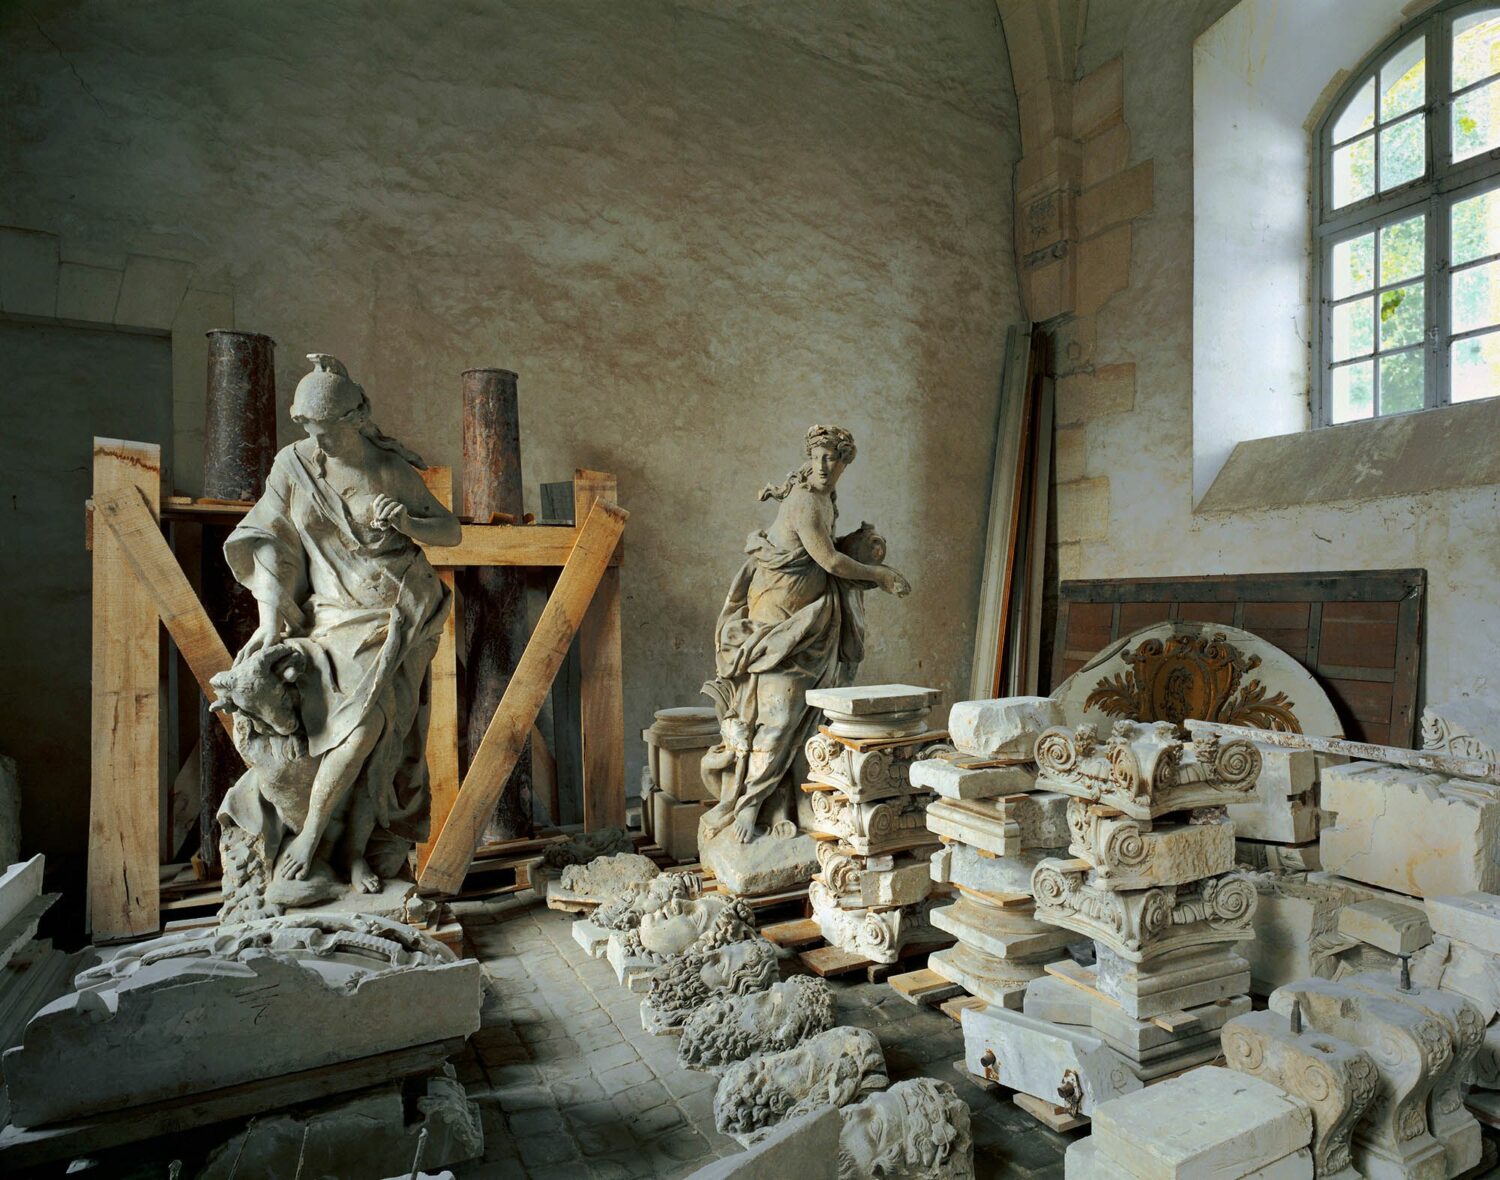 Robert Polidori: Réserve de sculpture, Petites Écuries – R.d.C